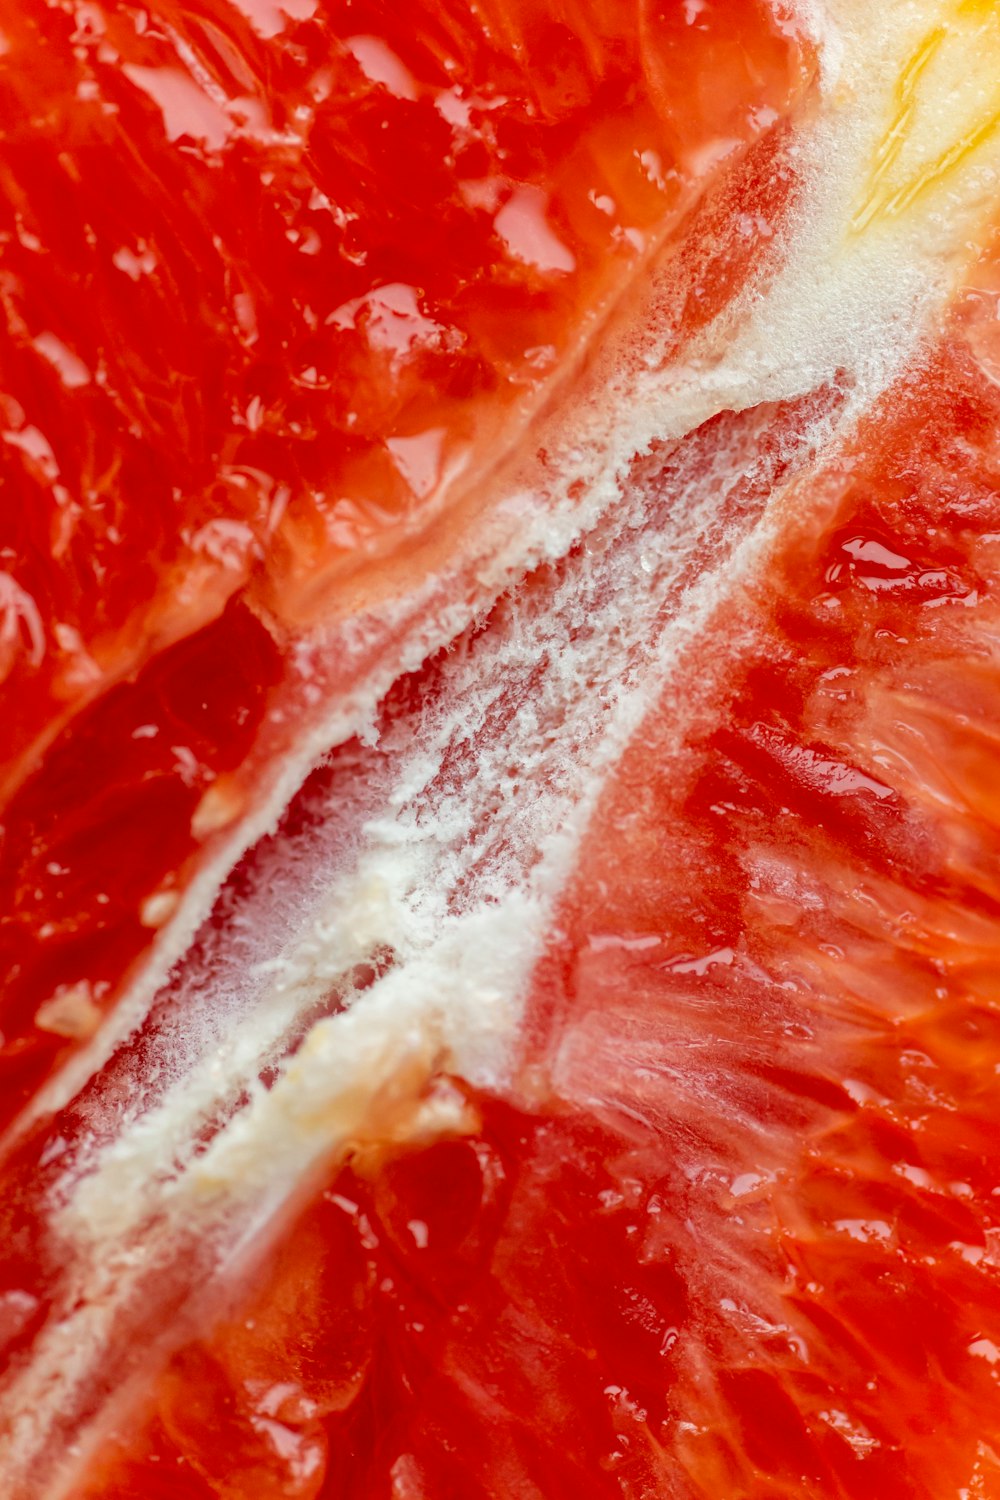 a close up of a grapefruit cut in half